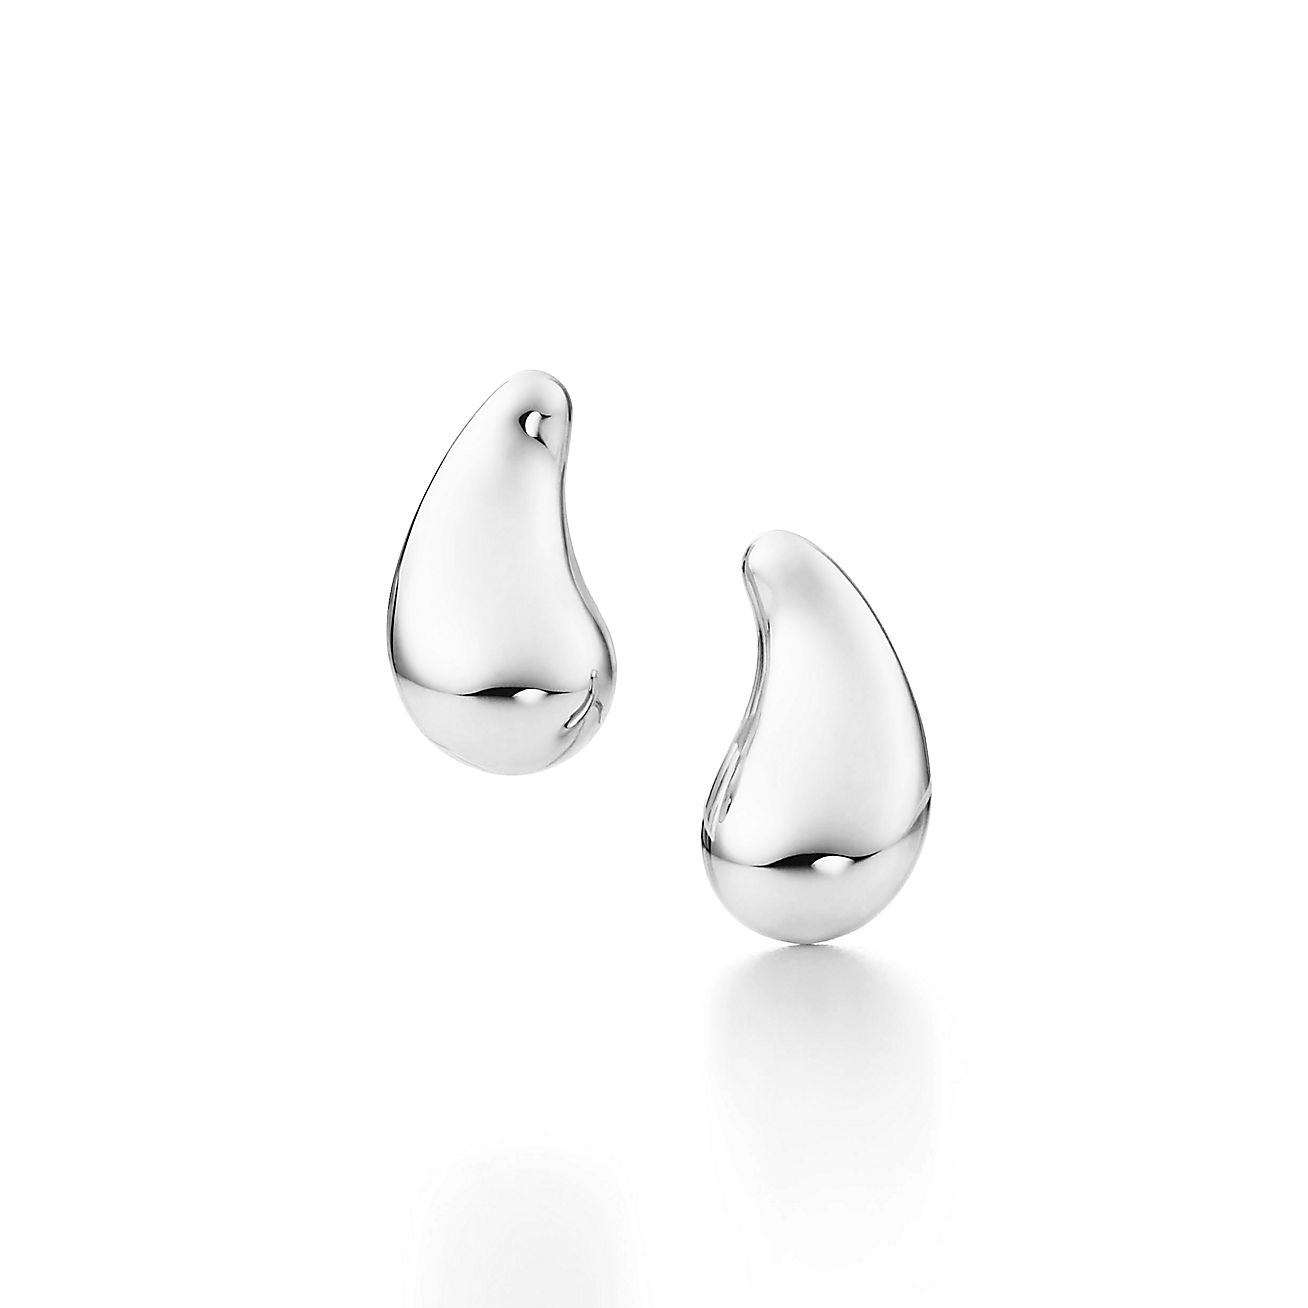 Sterling Silver Teardrop Earrings